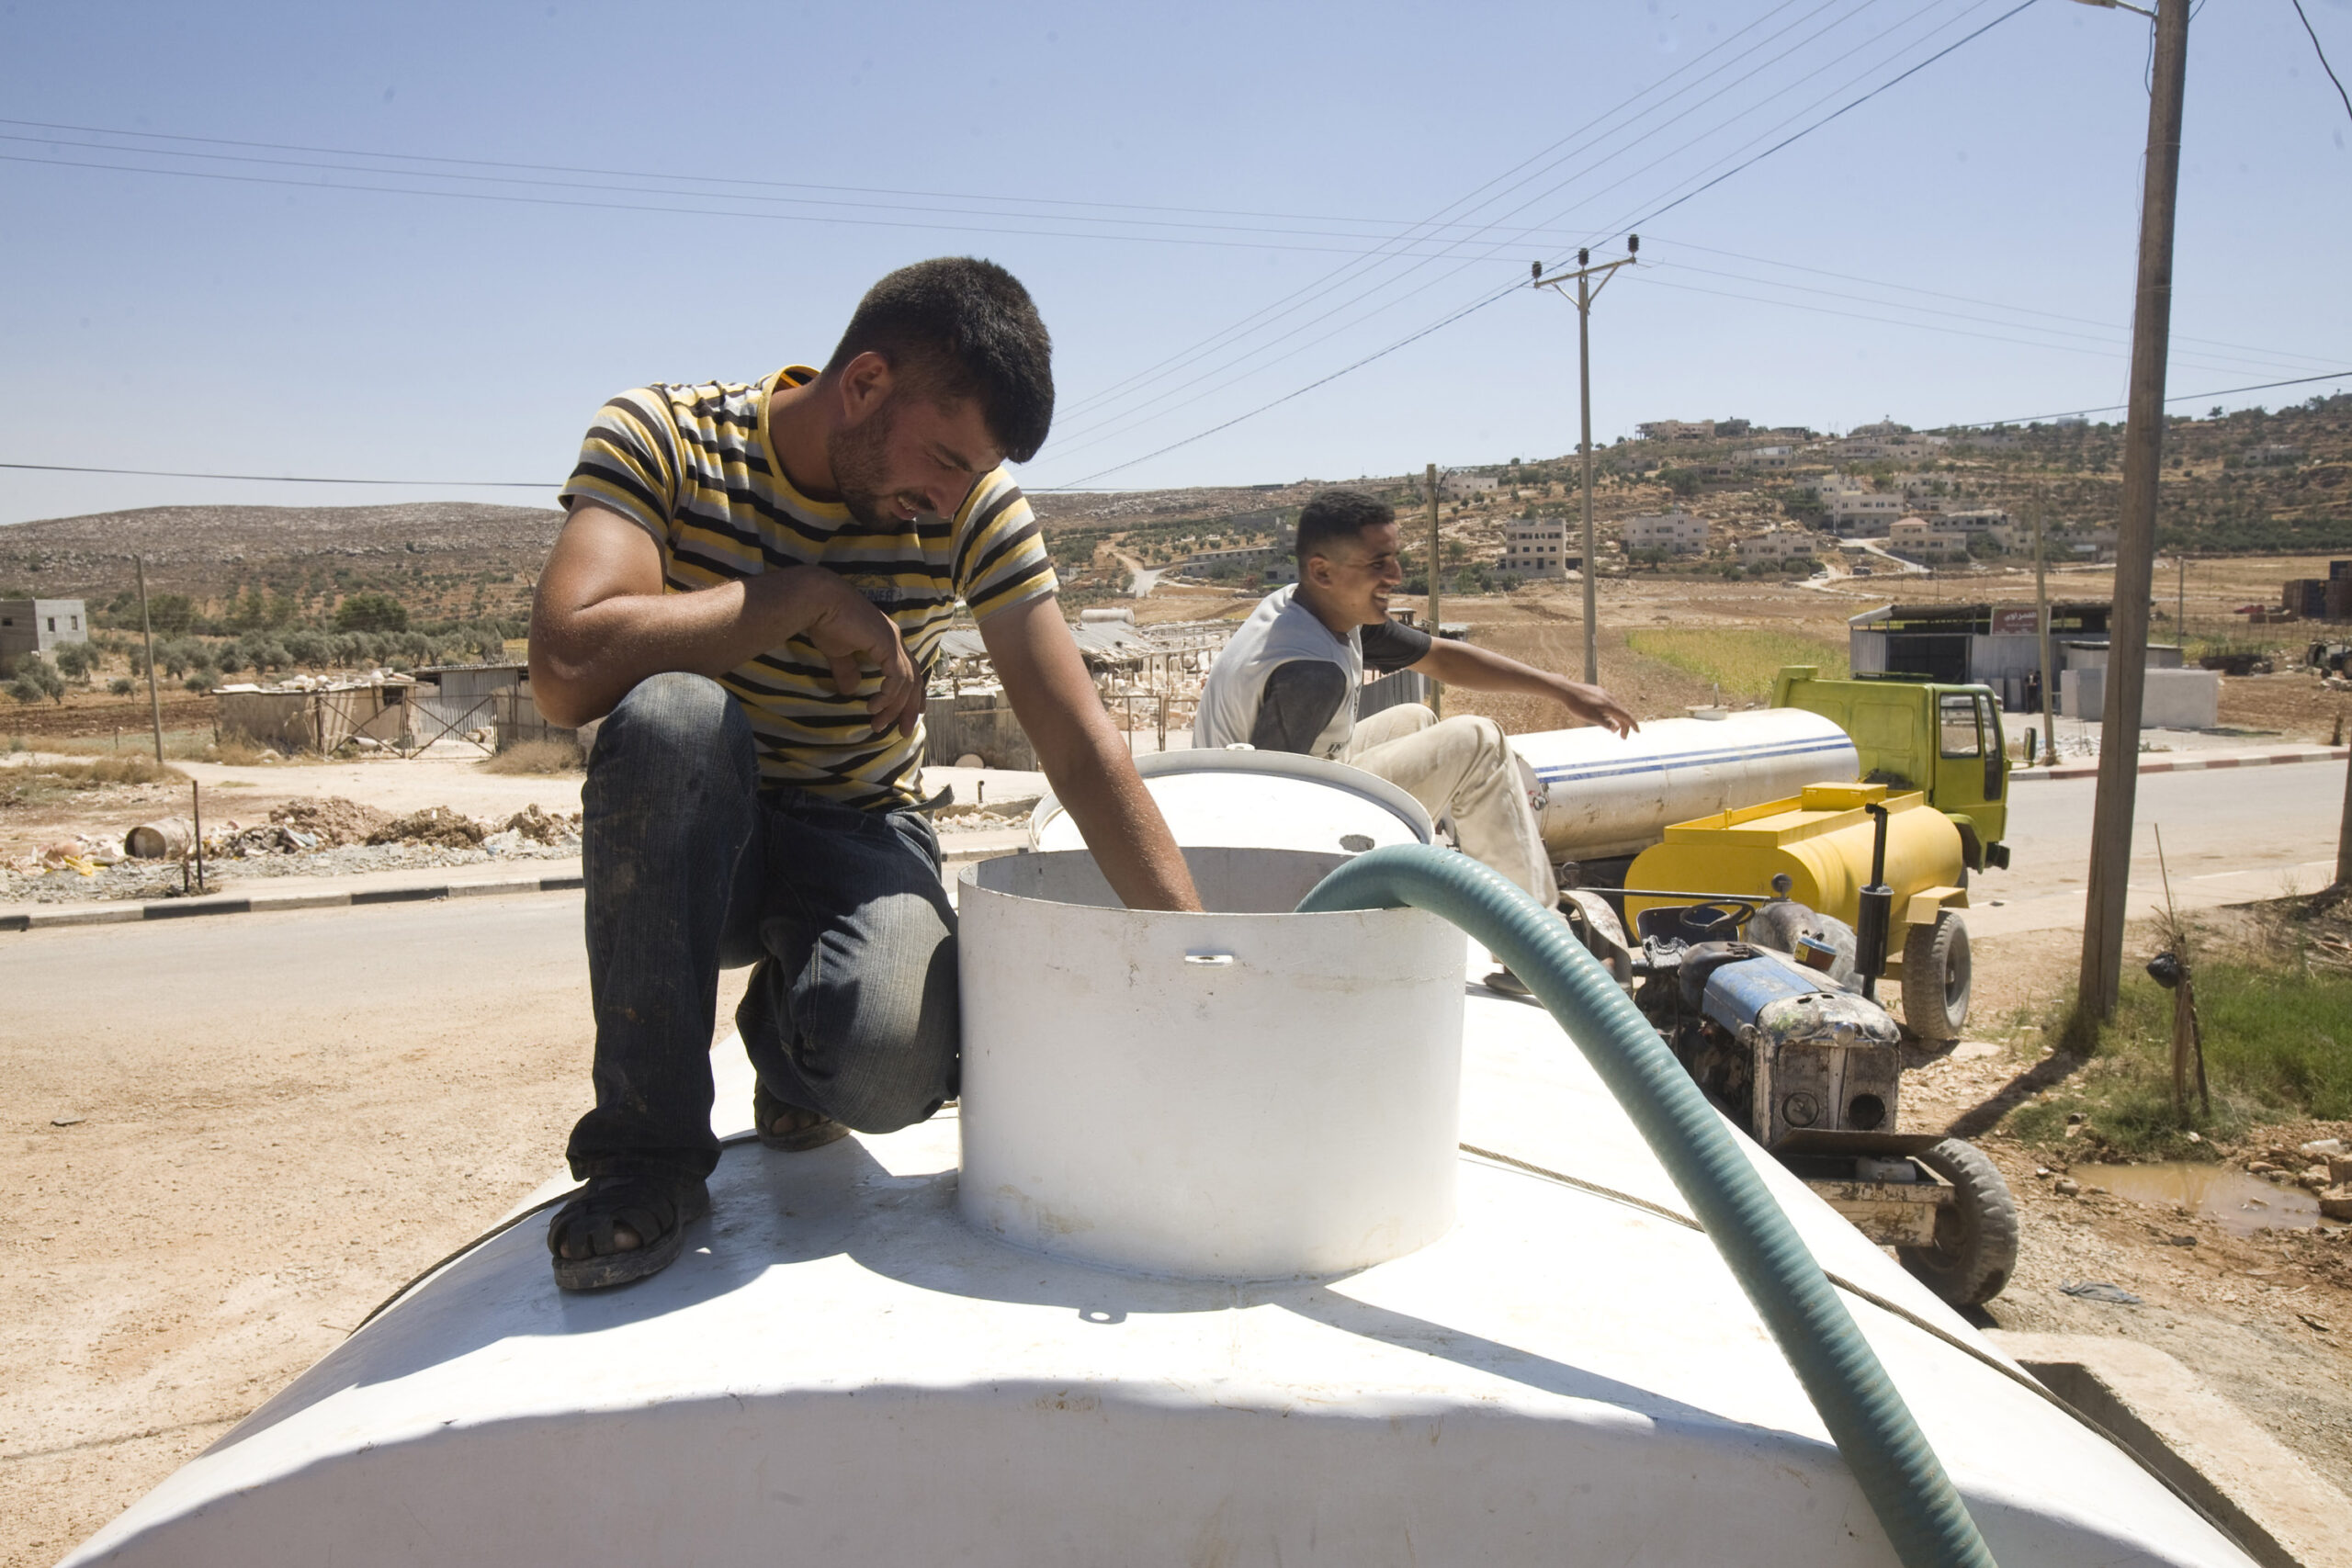 פרויקטים פלסטיניים לא מקבלים אישור. פלסטינים ממלאים מים במכלית ליד שכם, 2009 (צילום: אקטיבסטילס)